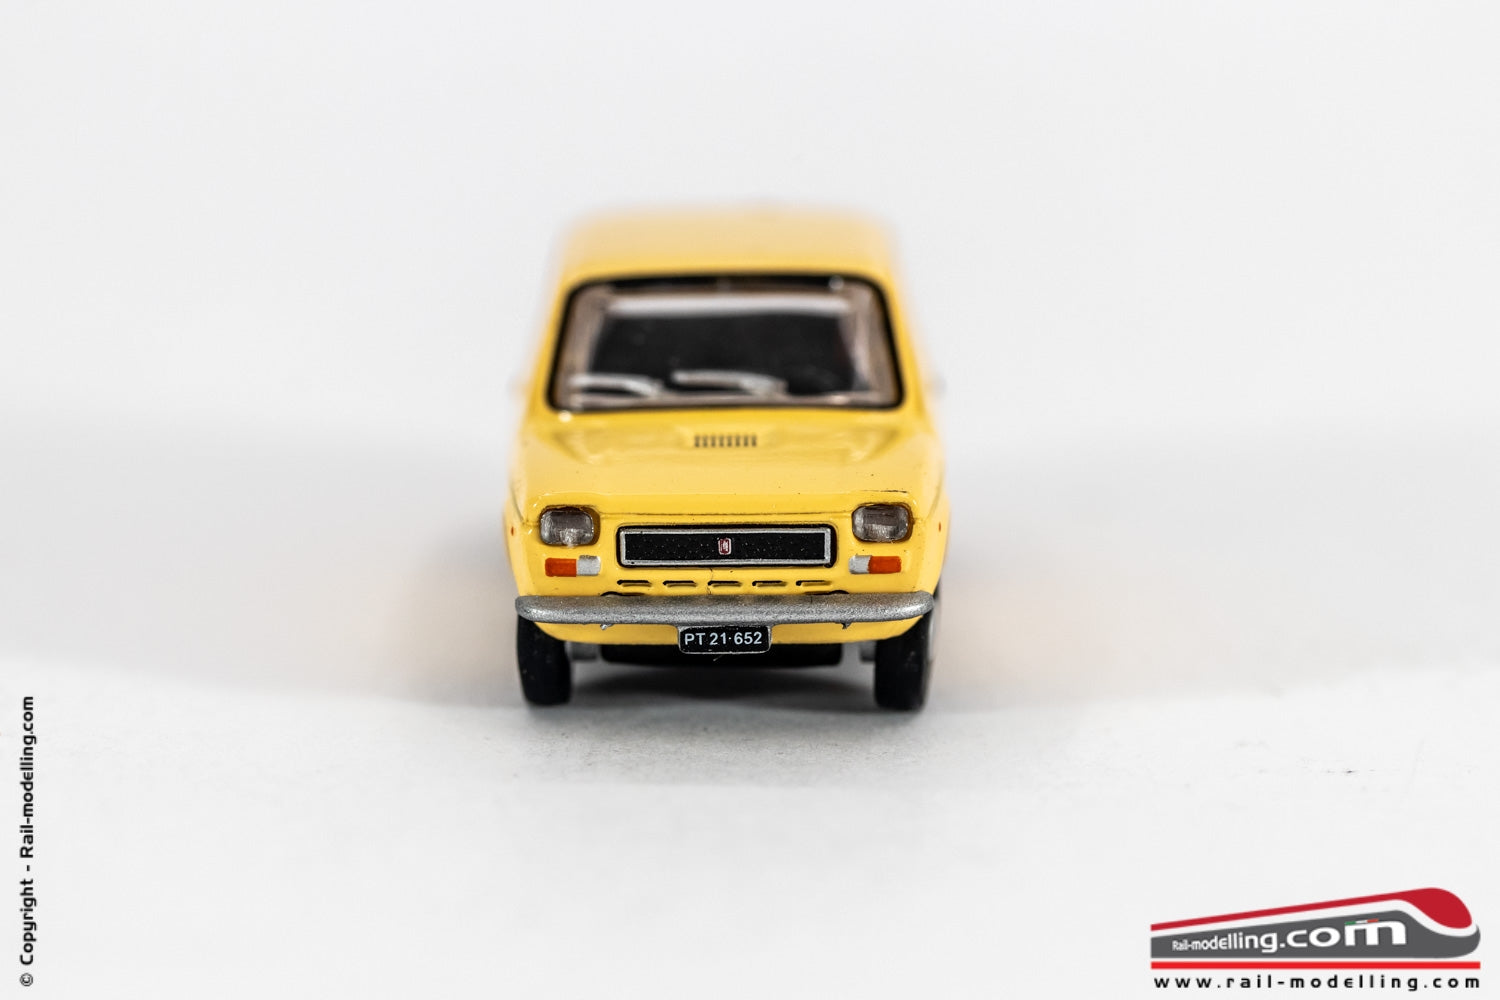 ROCO 5394 - H0 1:87 - Auto modellino Fiat 127 gialla delle poste austriache